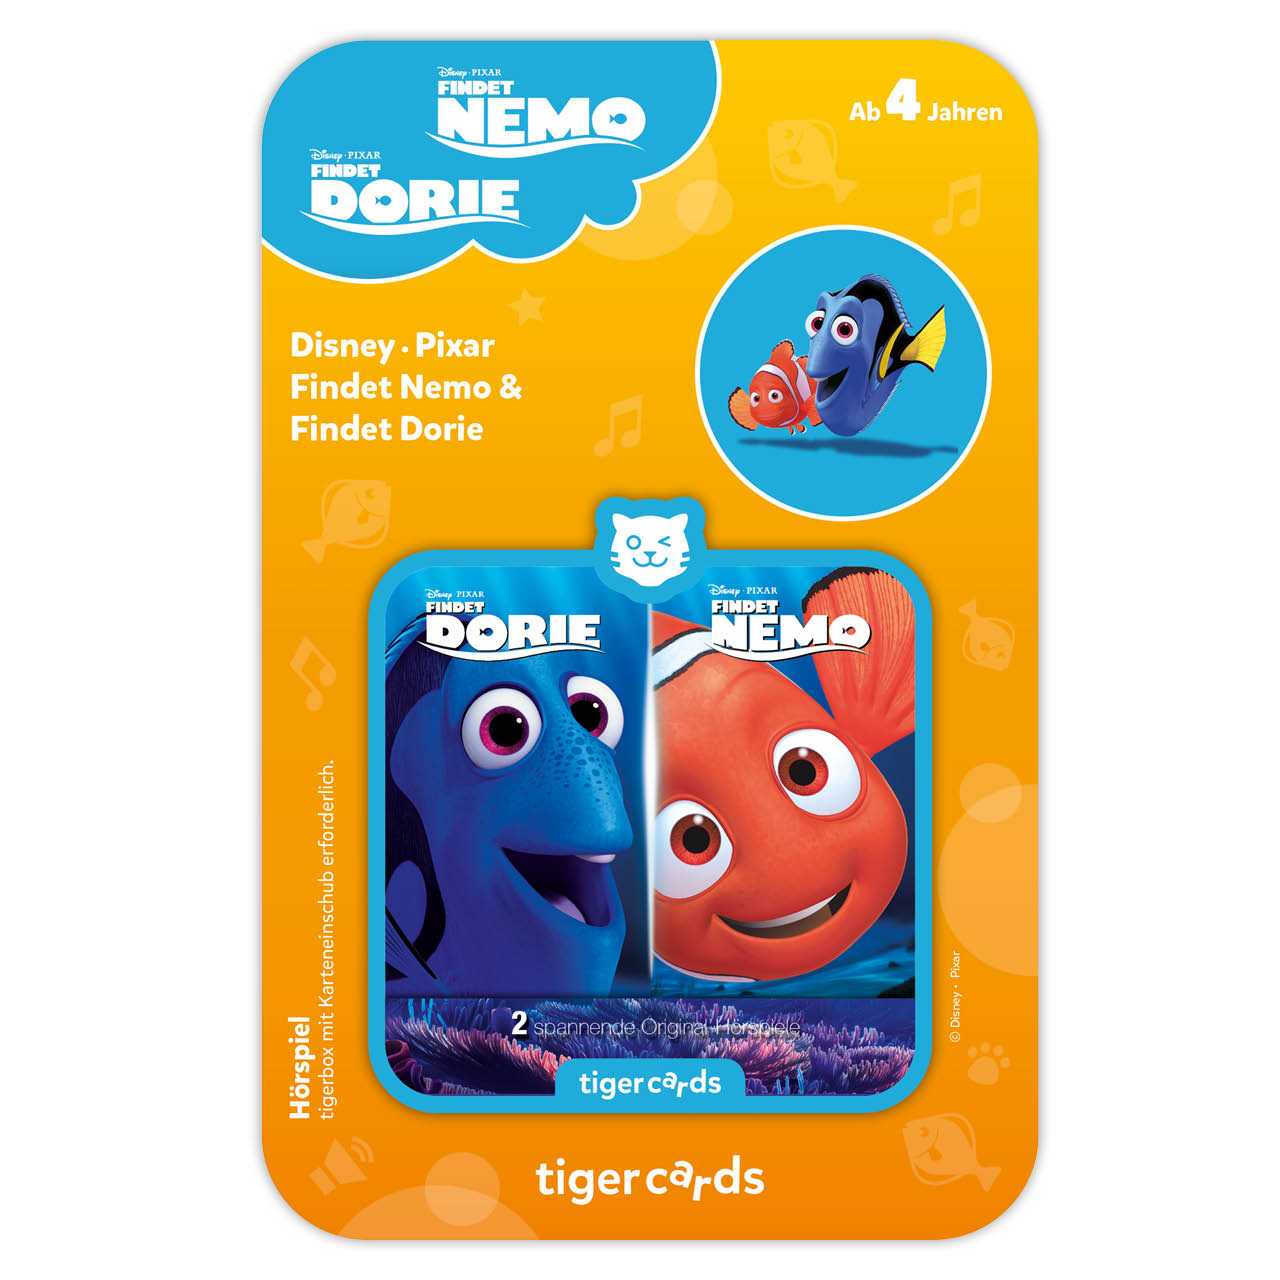 Findet Nemo & Findet Dorie als Tigercard